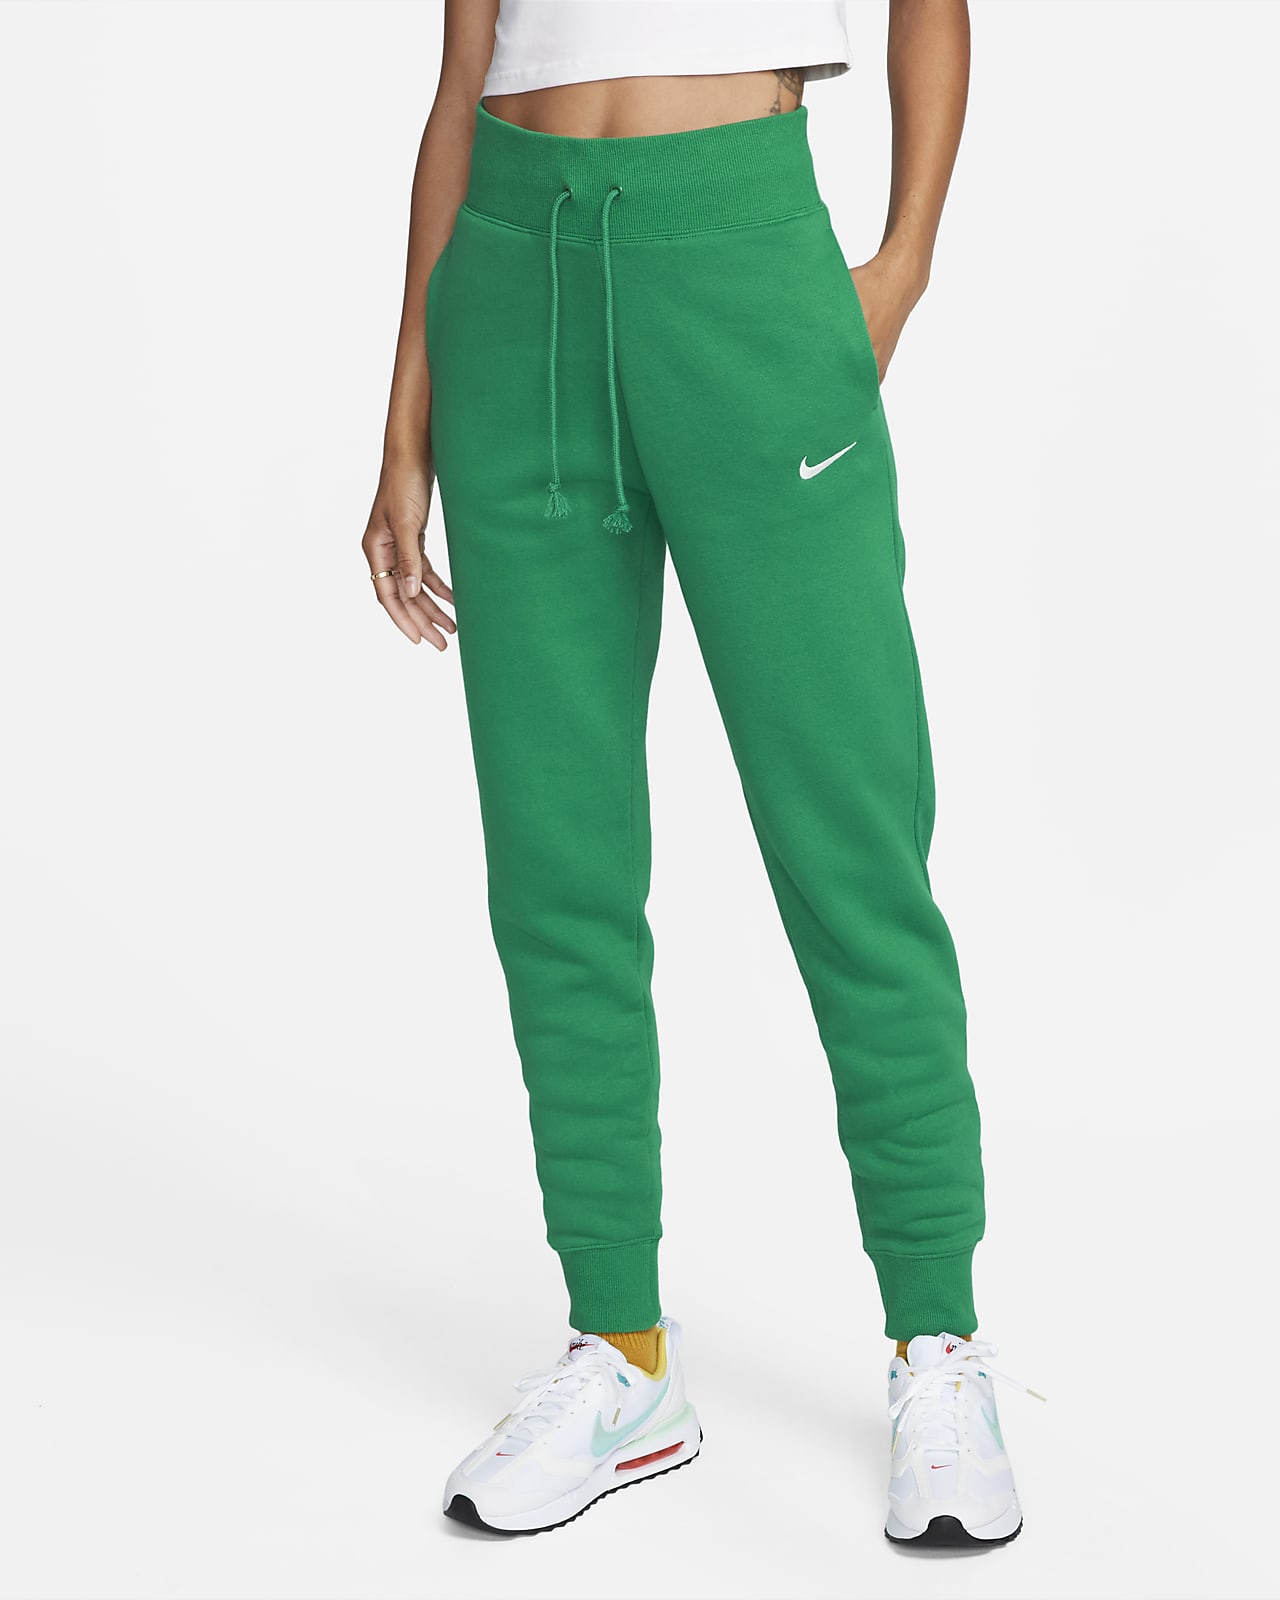 Nike Sportswear Phoenix Fleece Joggers. High-Waisted Women\'s